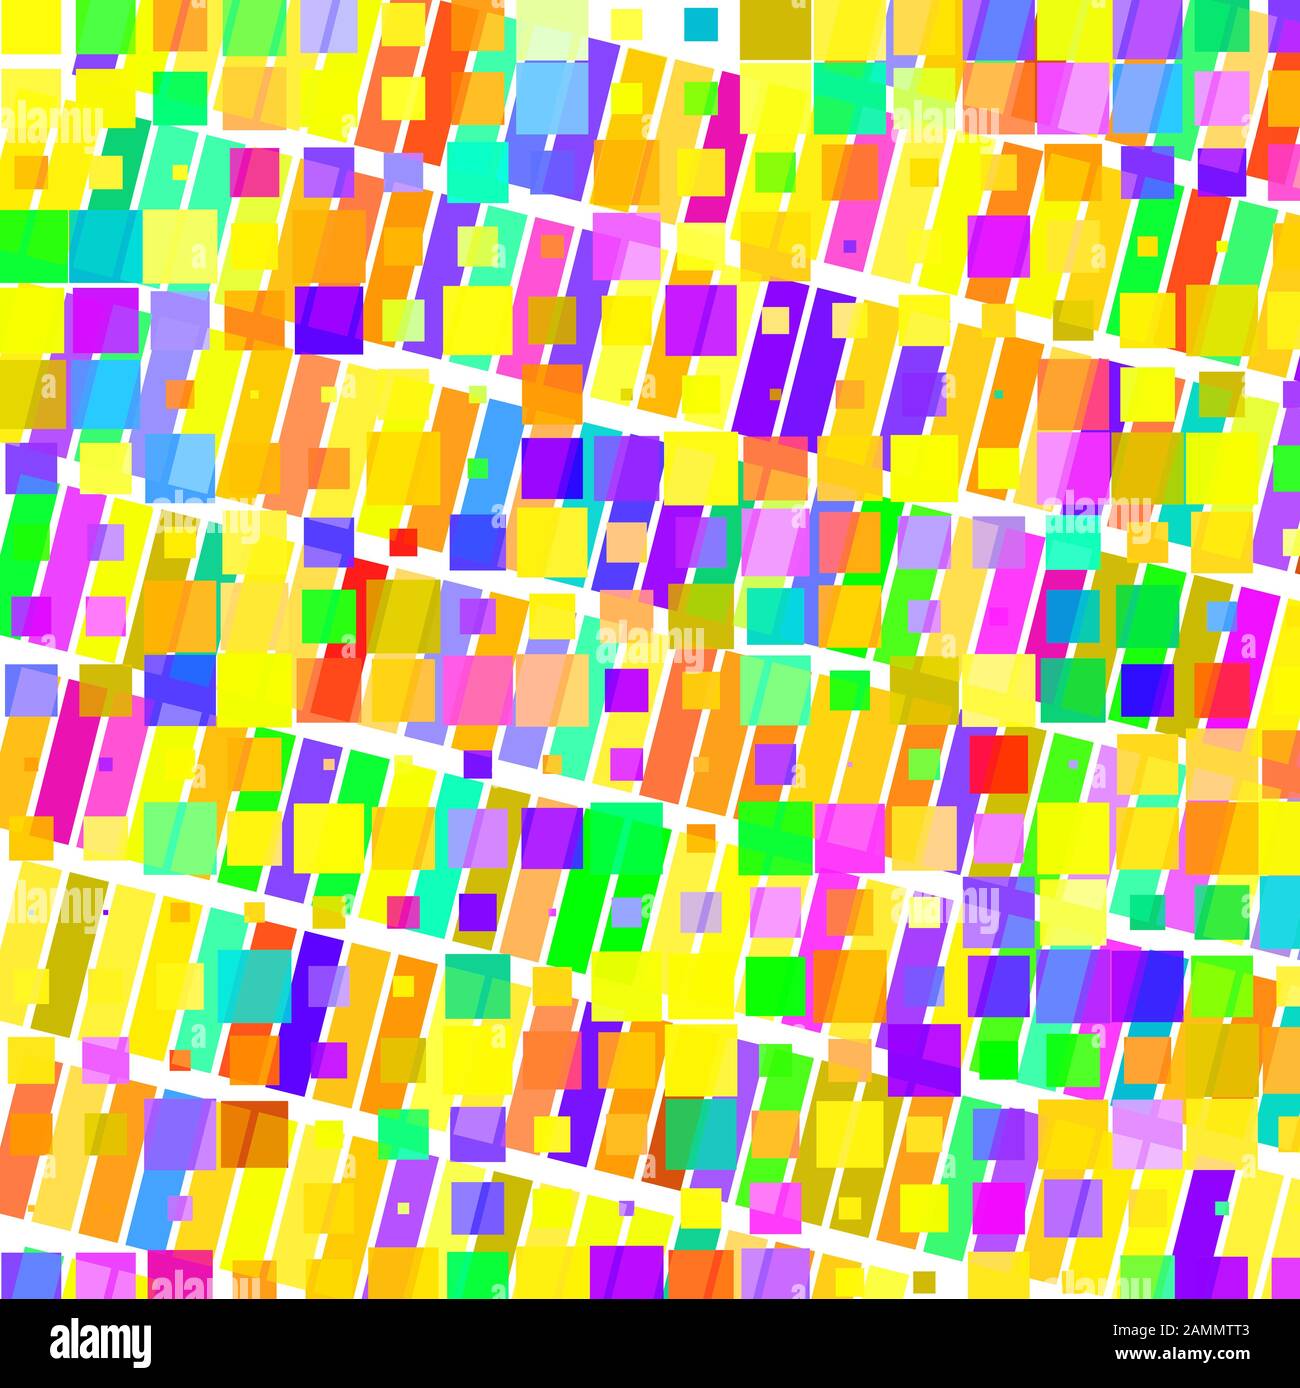 Mosaik aus farbigen Rechtecken Stock Vektor